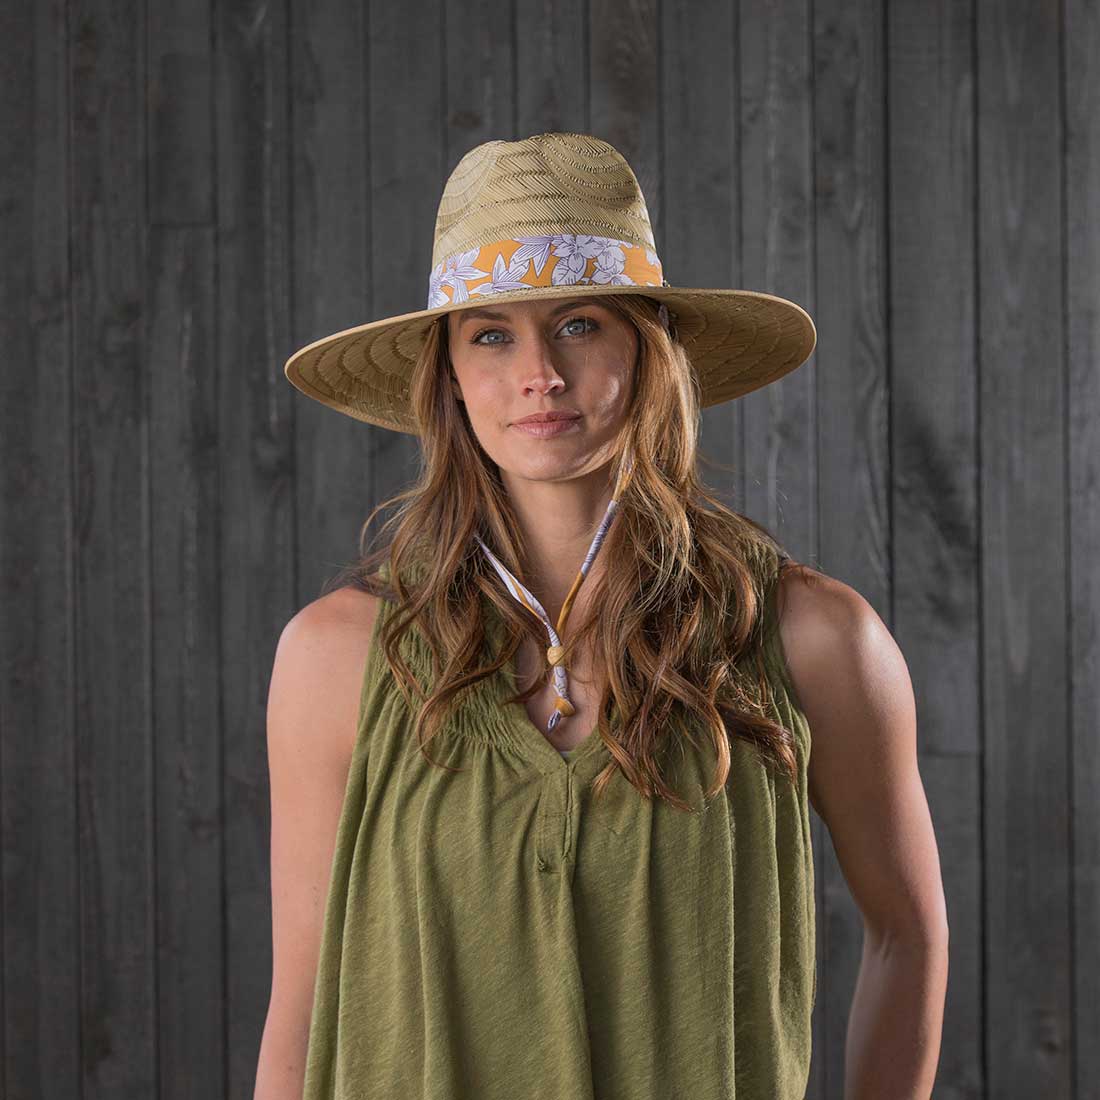 Pistil Women's Refuge Sun Hat - Bone